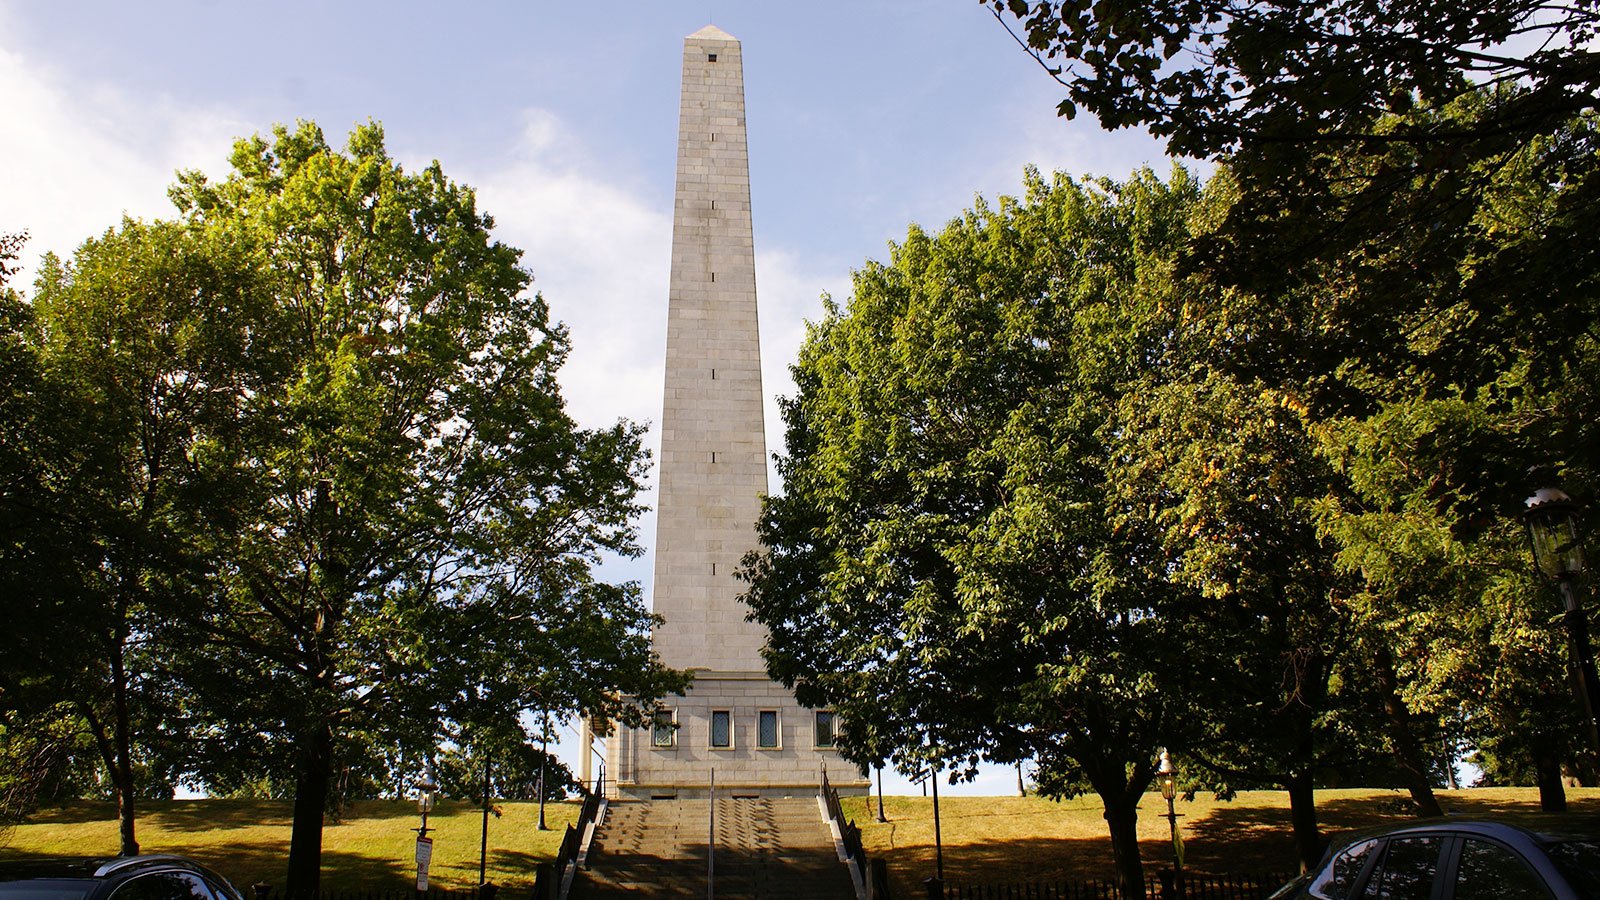 The Bunker Hill Monument in Charlestown, Boston, Massachusetts